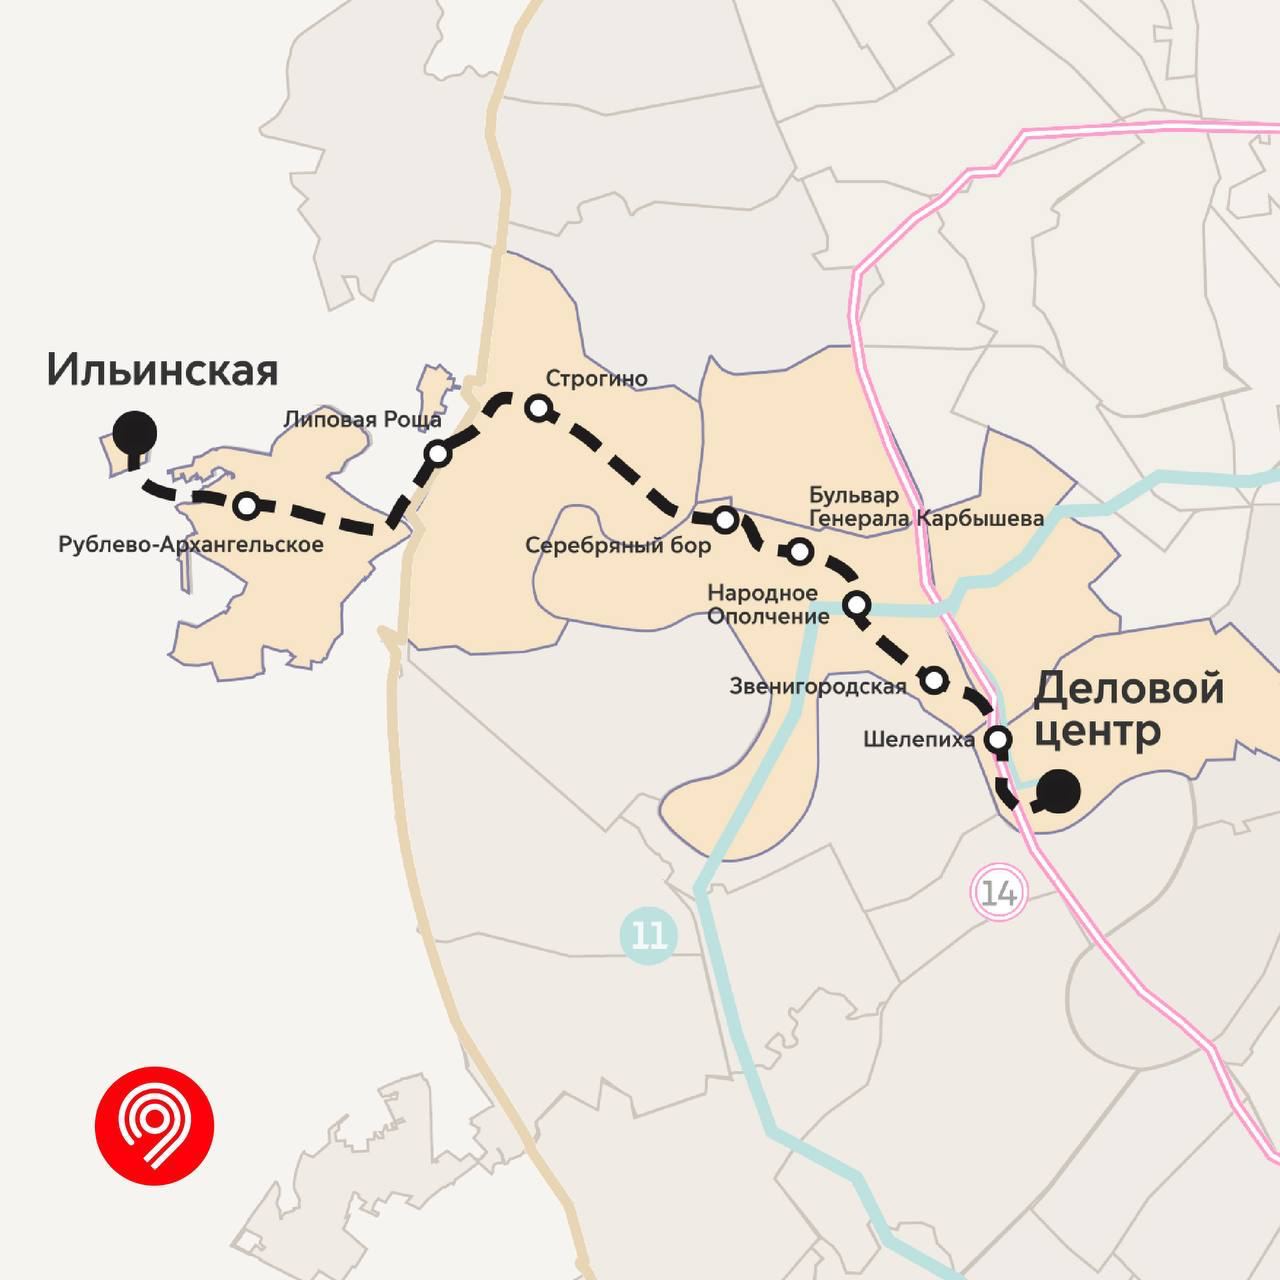 В Москве появится новая ветка метро — Рублево-Архангельская линия